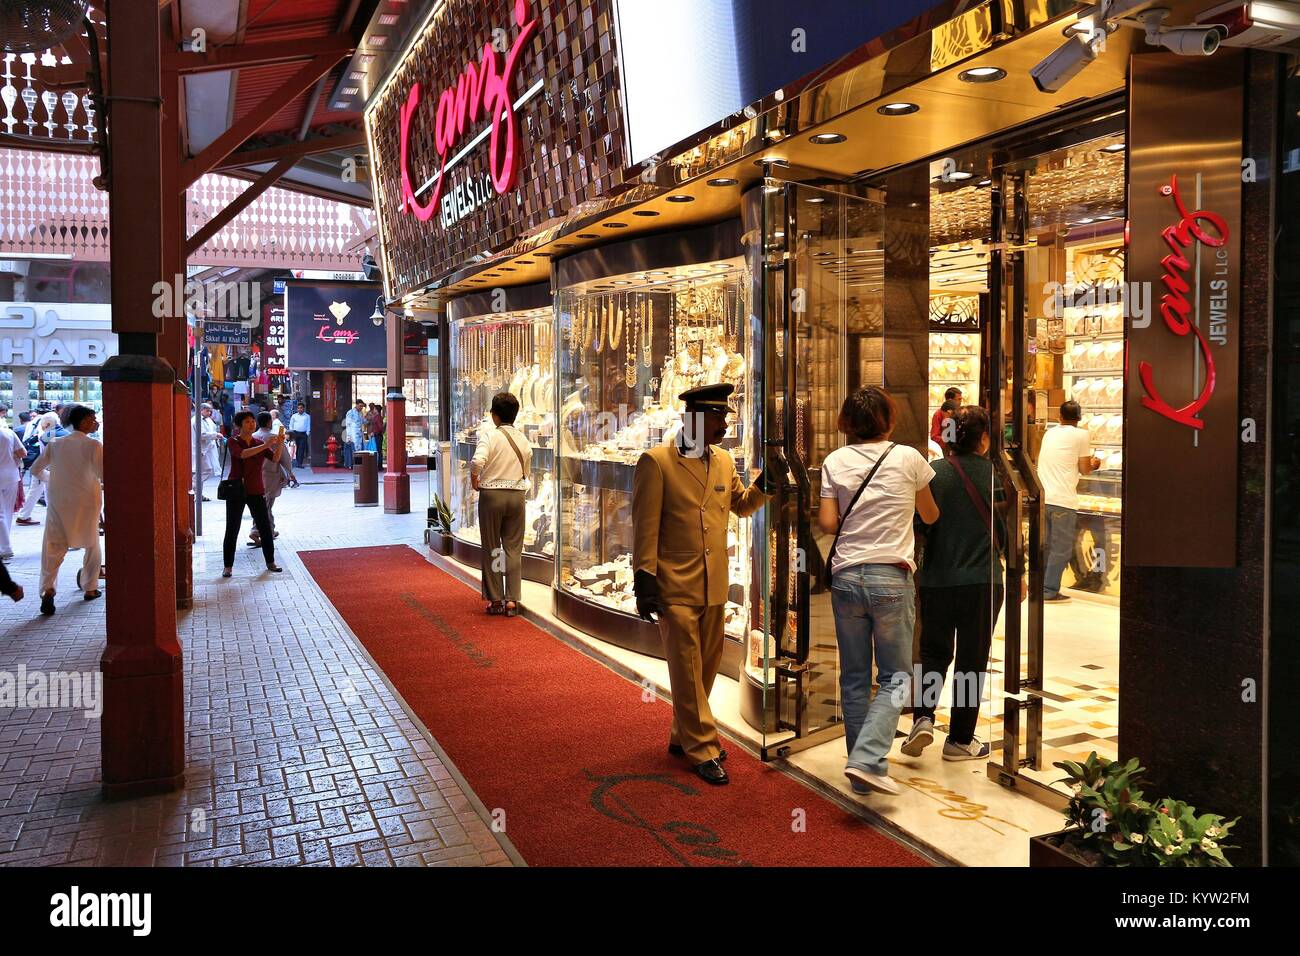 DUBAI, VAE - Dezember 10, 2017: die Menschen besuchen den Gold Souk in Dubai, VAE. Der Goldmarkt hat 300 Einzelhändlern und ist in Al Dhagaya Teil von Deira Stockfoto